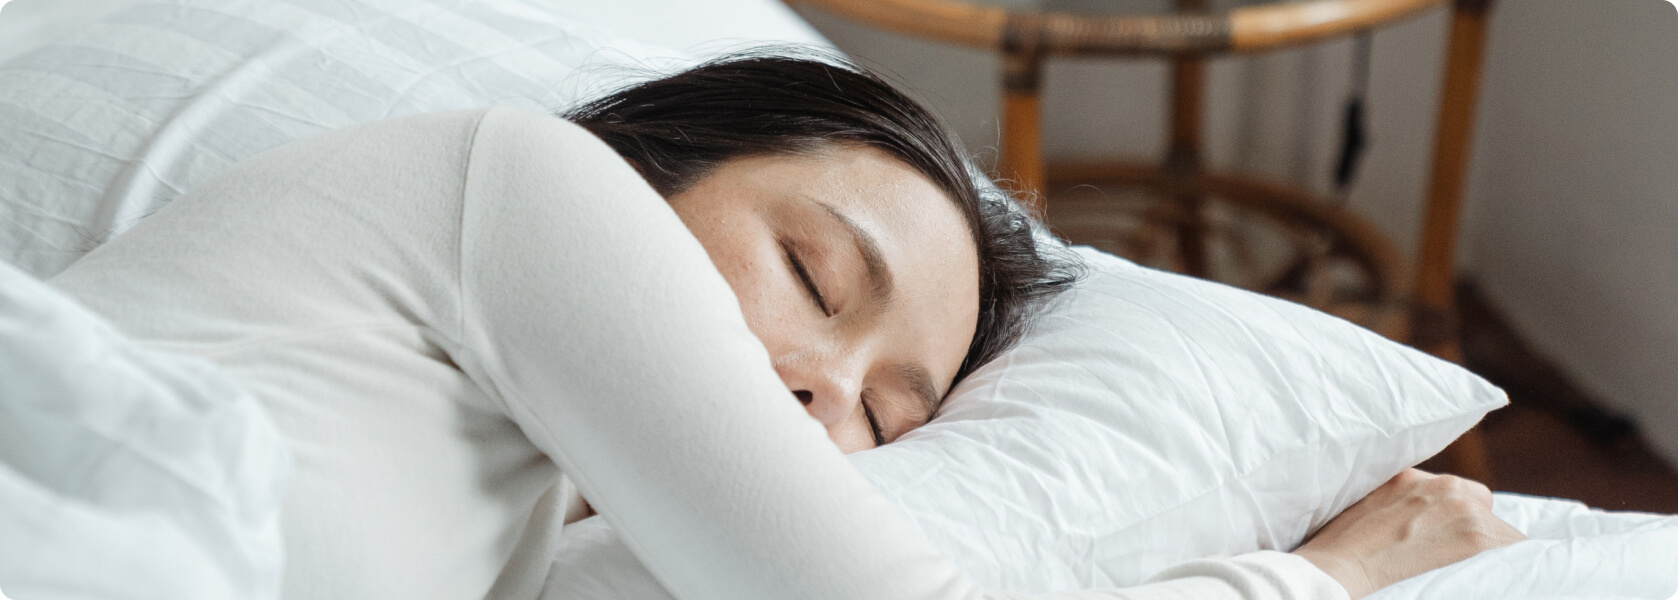 Hilft CBD beim Schlafen? - Ruhe und wir erlangen einen Zustand mentaler Entspannung